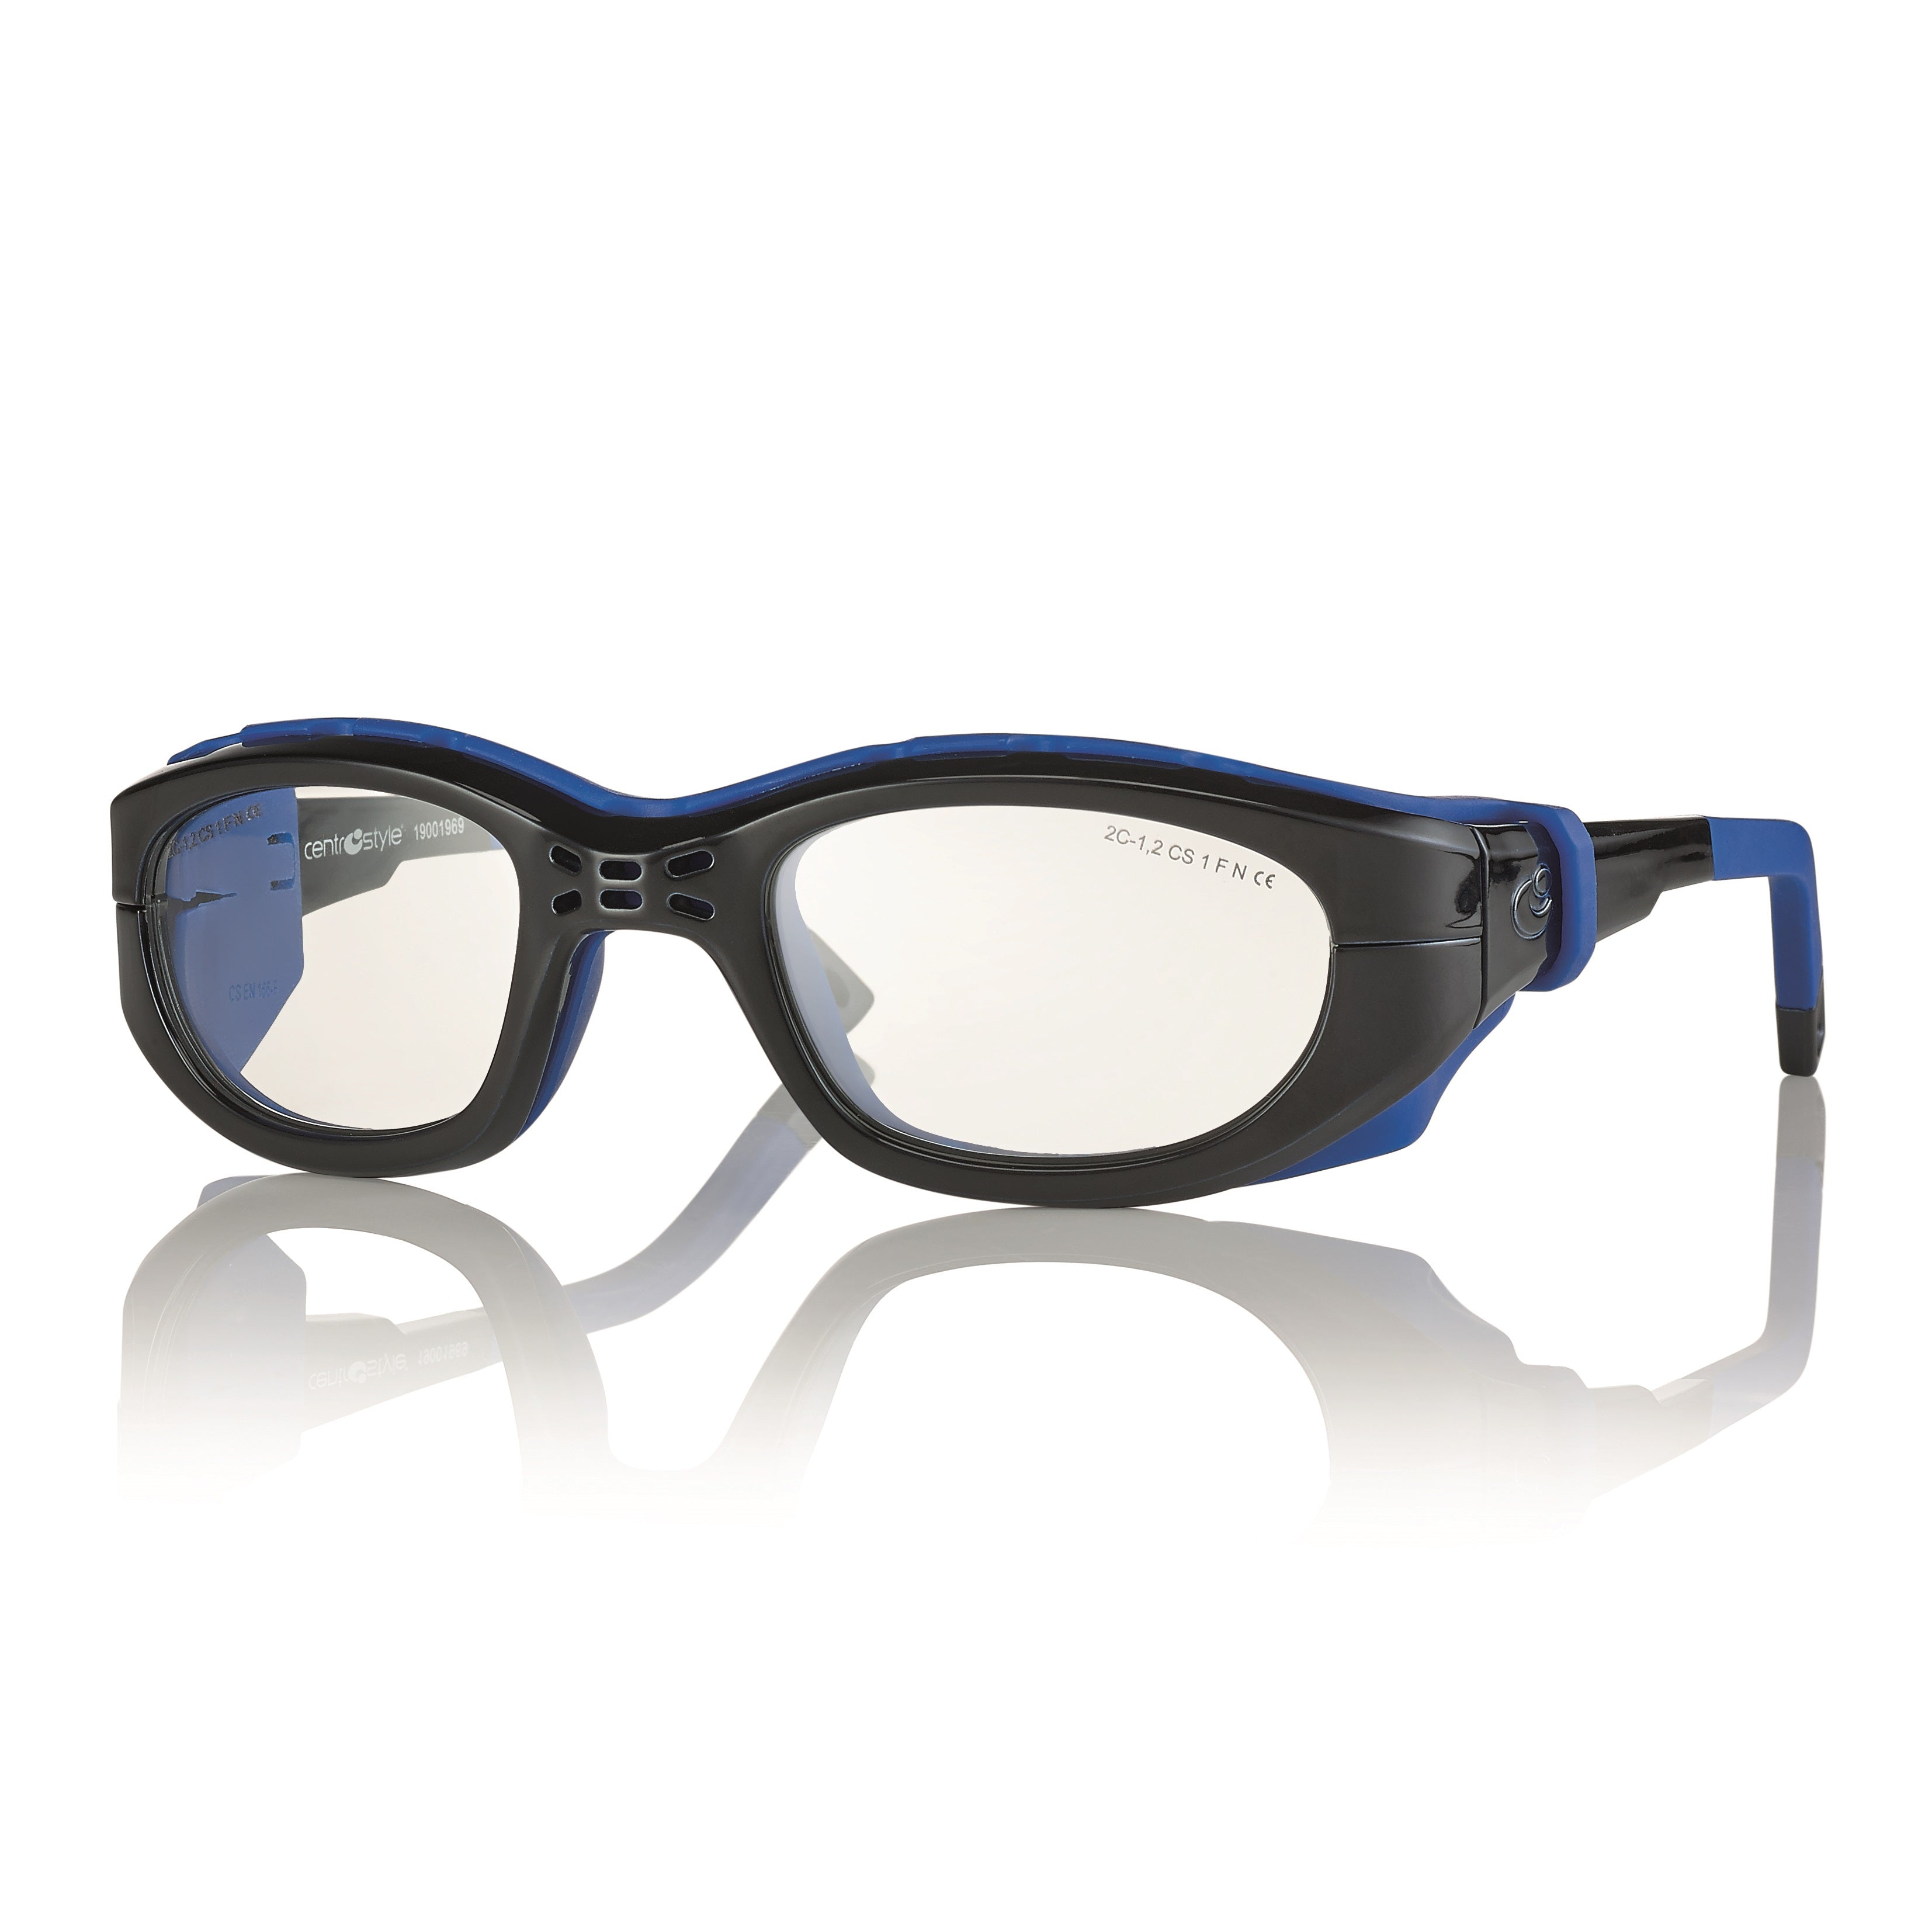 Centrostyle Sports Frame/Goggle - Large 53 Eye Size